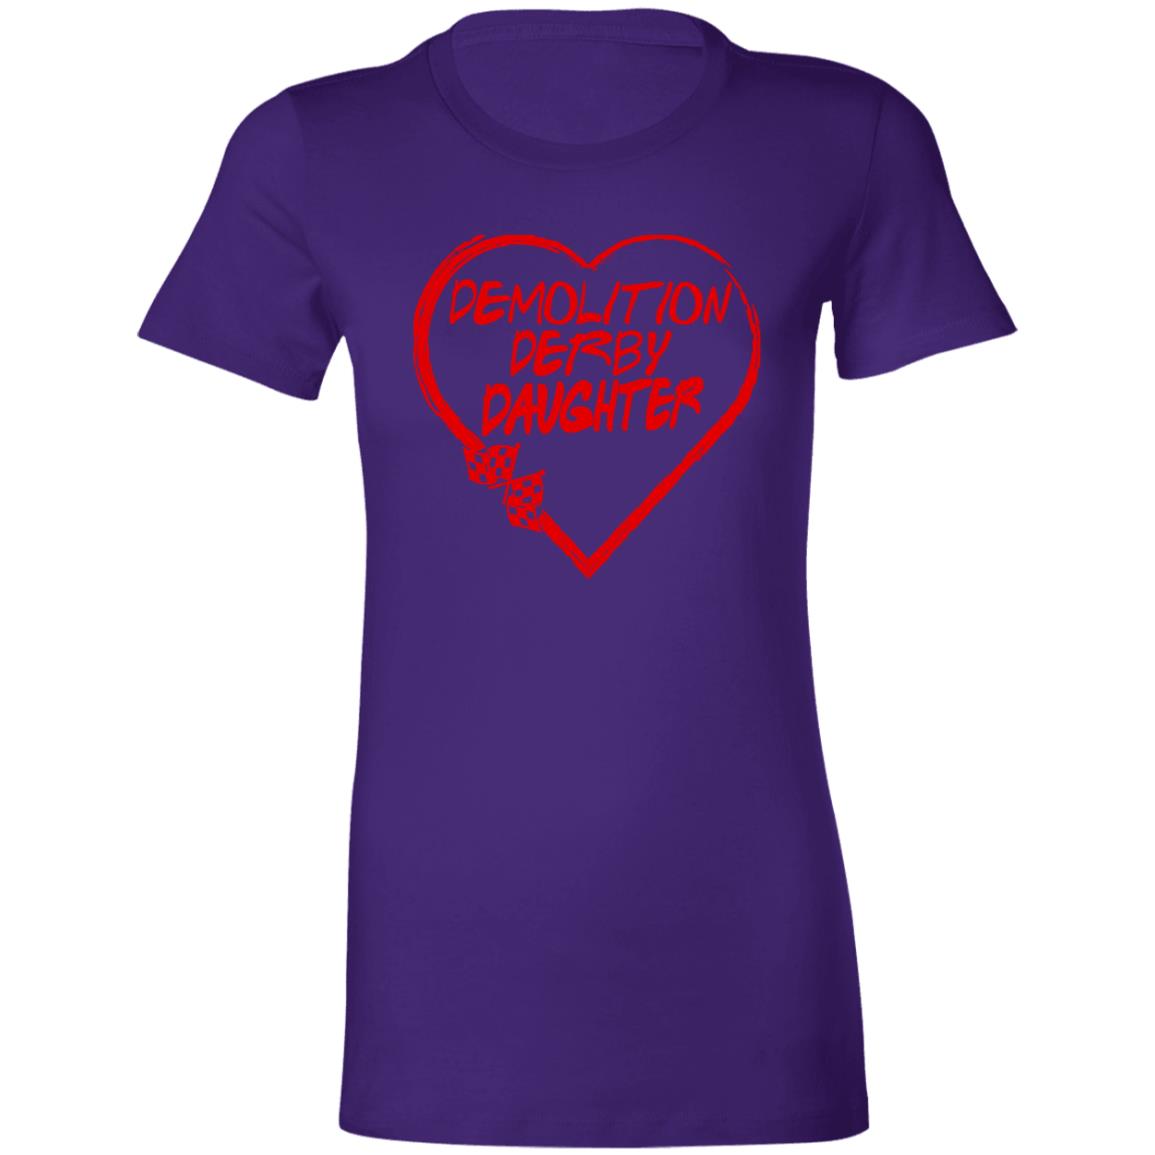 Demolition Derby Daughter Heart Ladies' Favorite T-Shirt